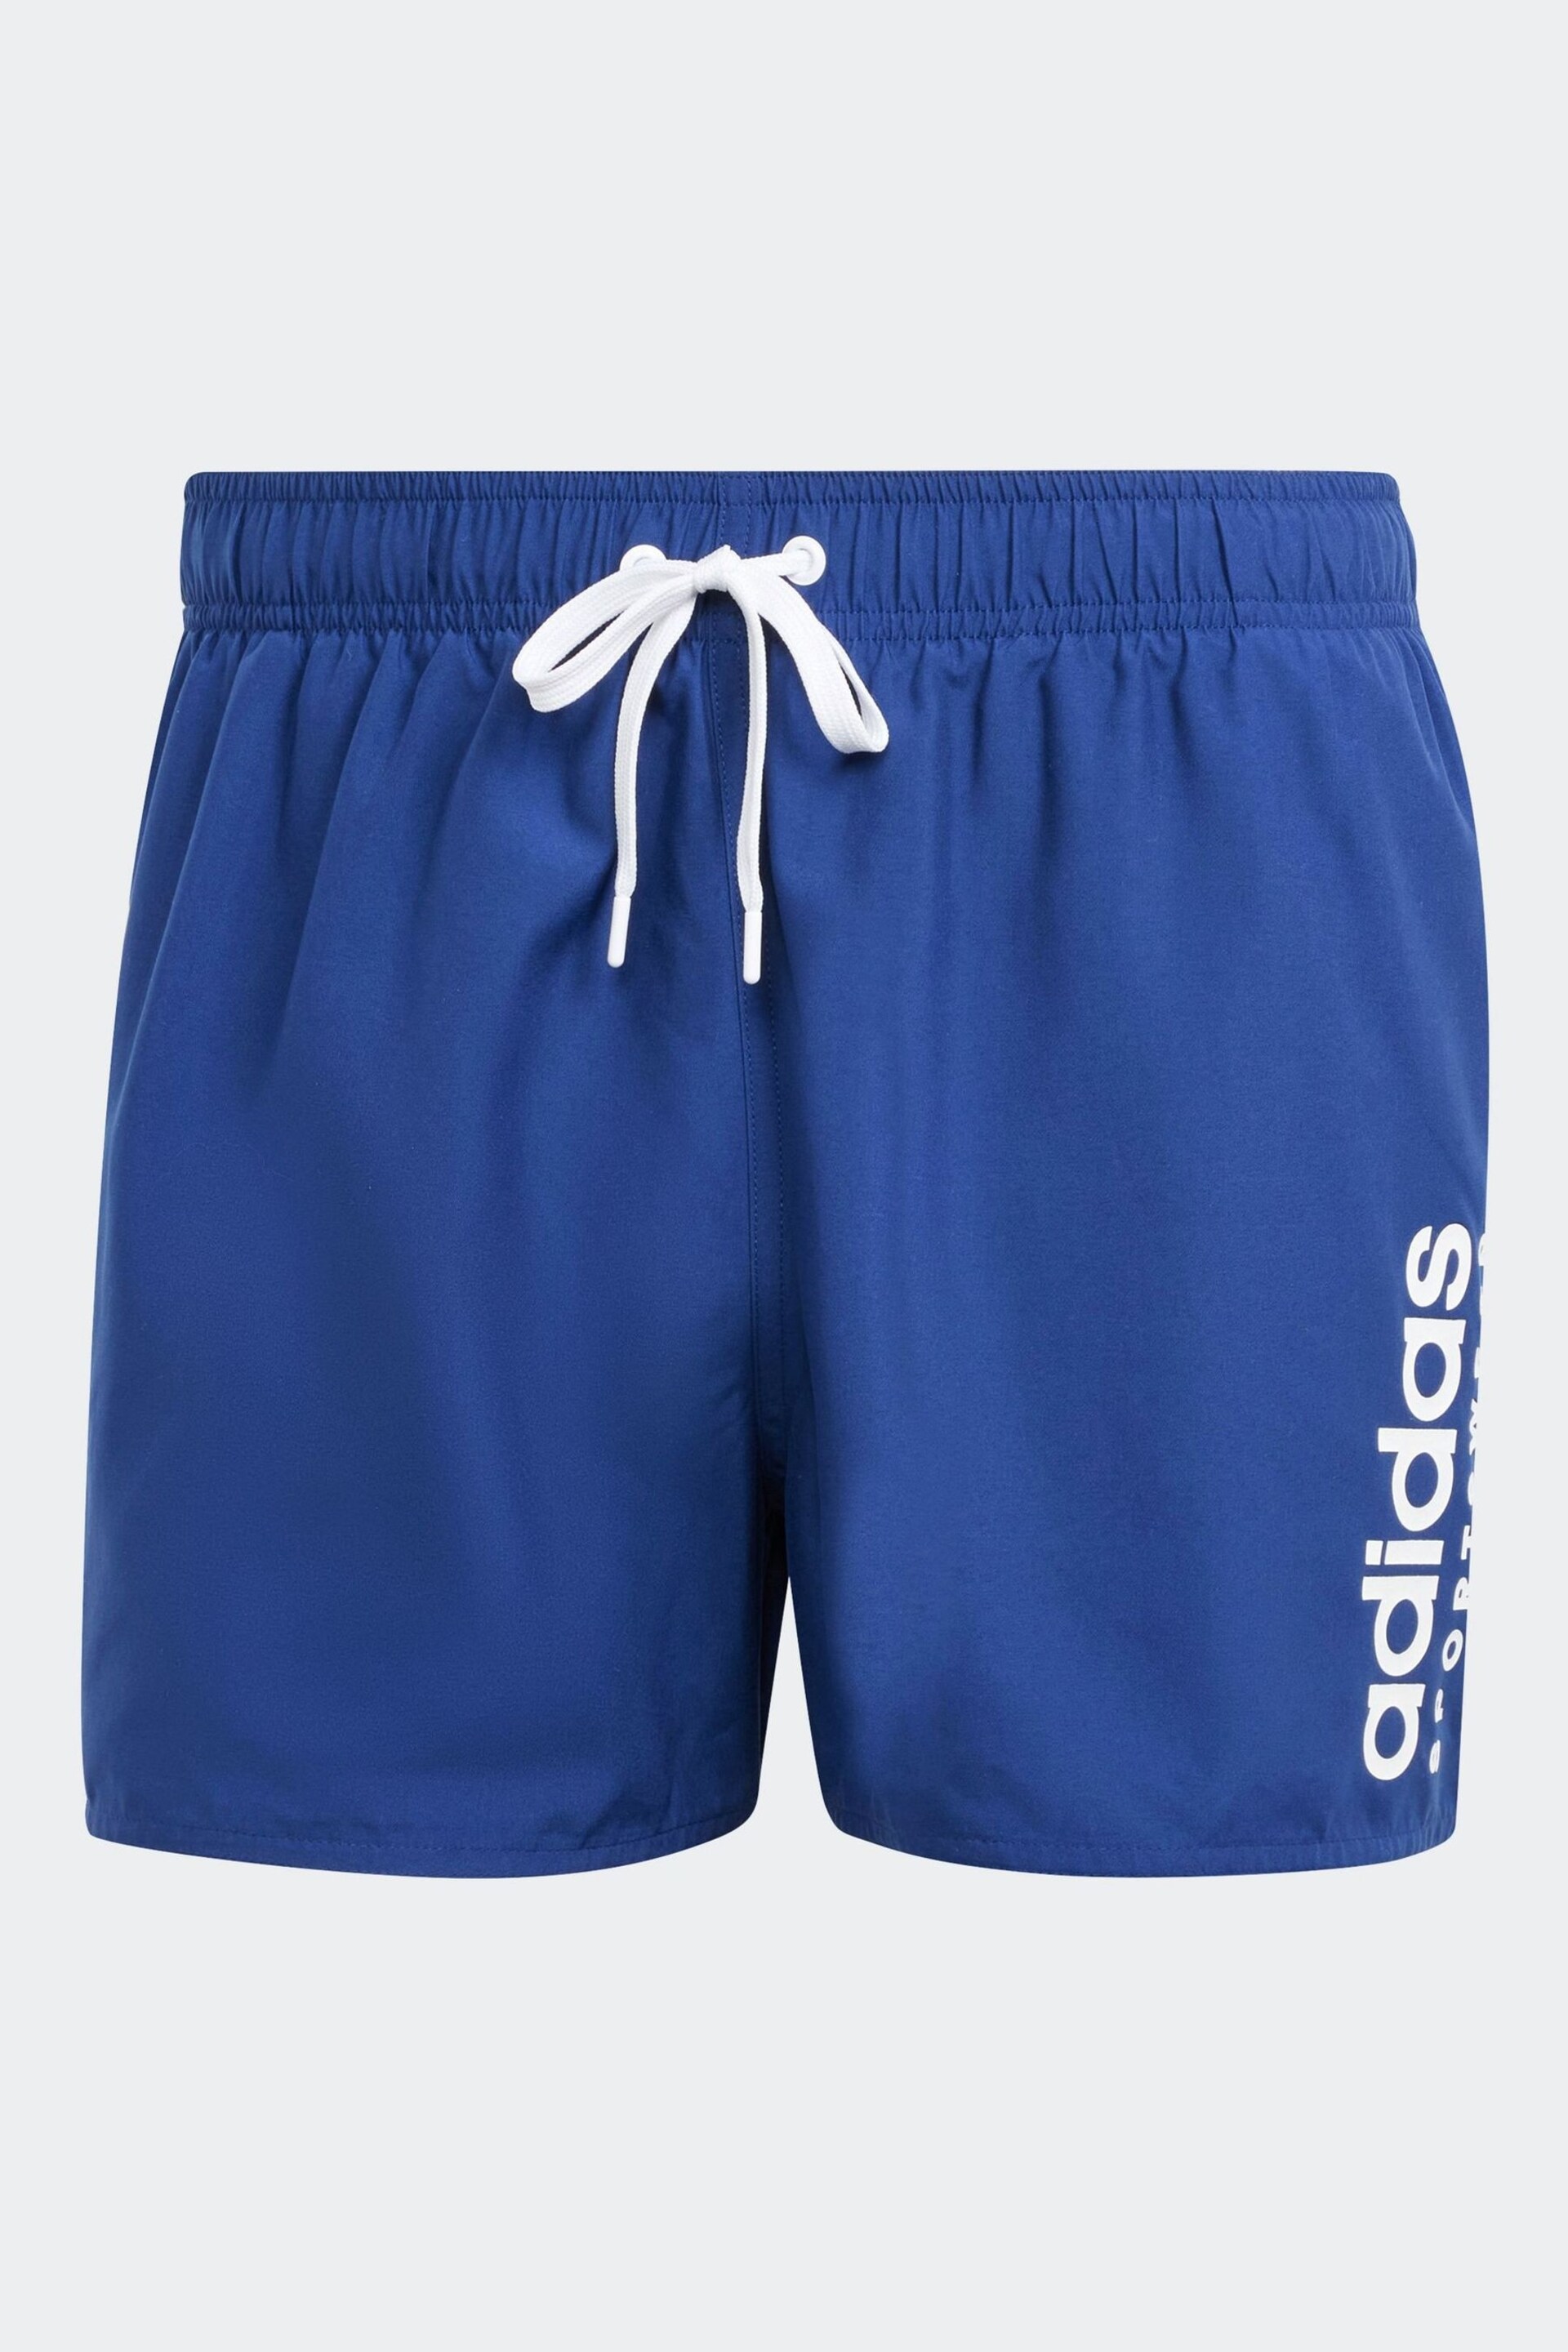 adidas Blue Essentials Logo Clx Shorts - Image 7 of 7